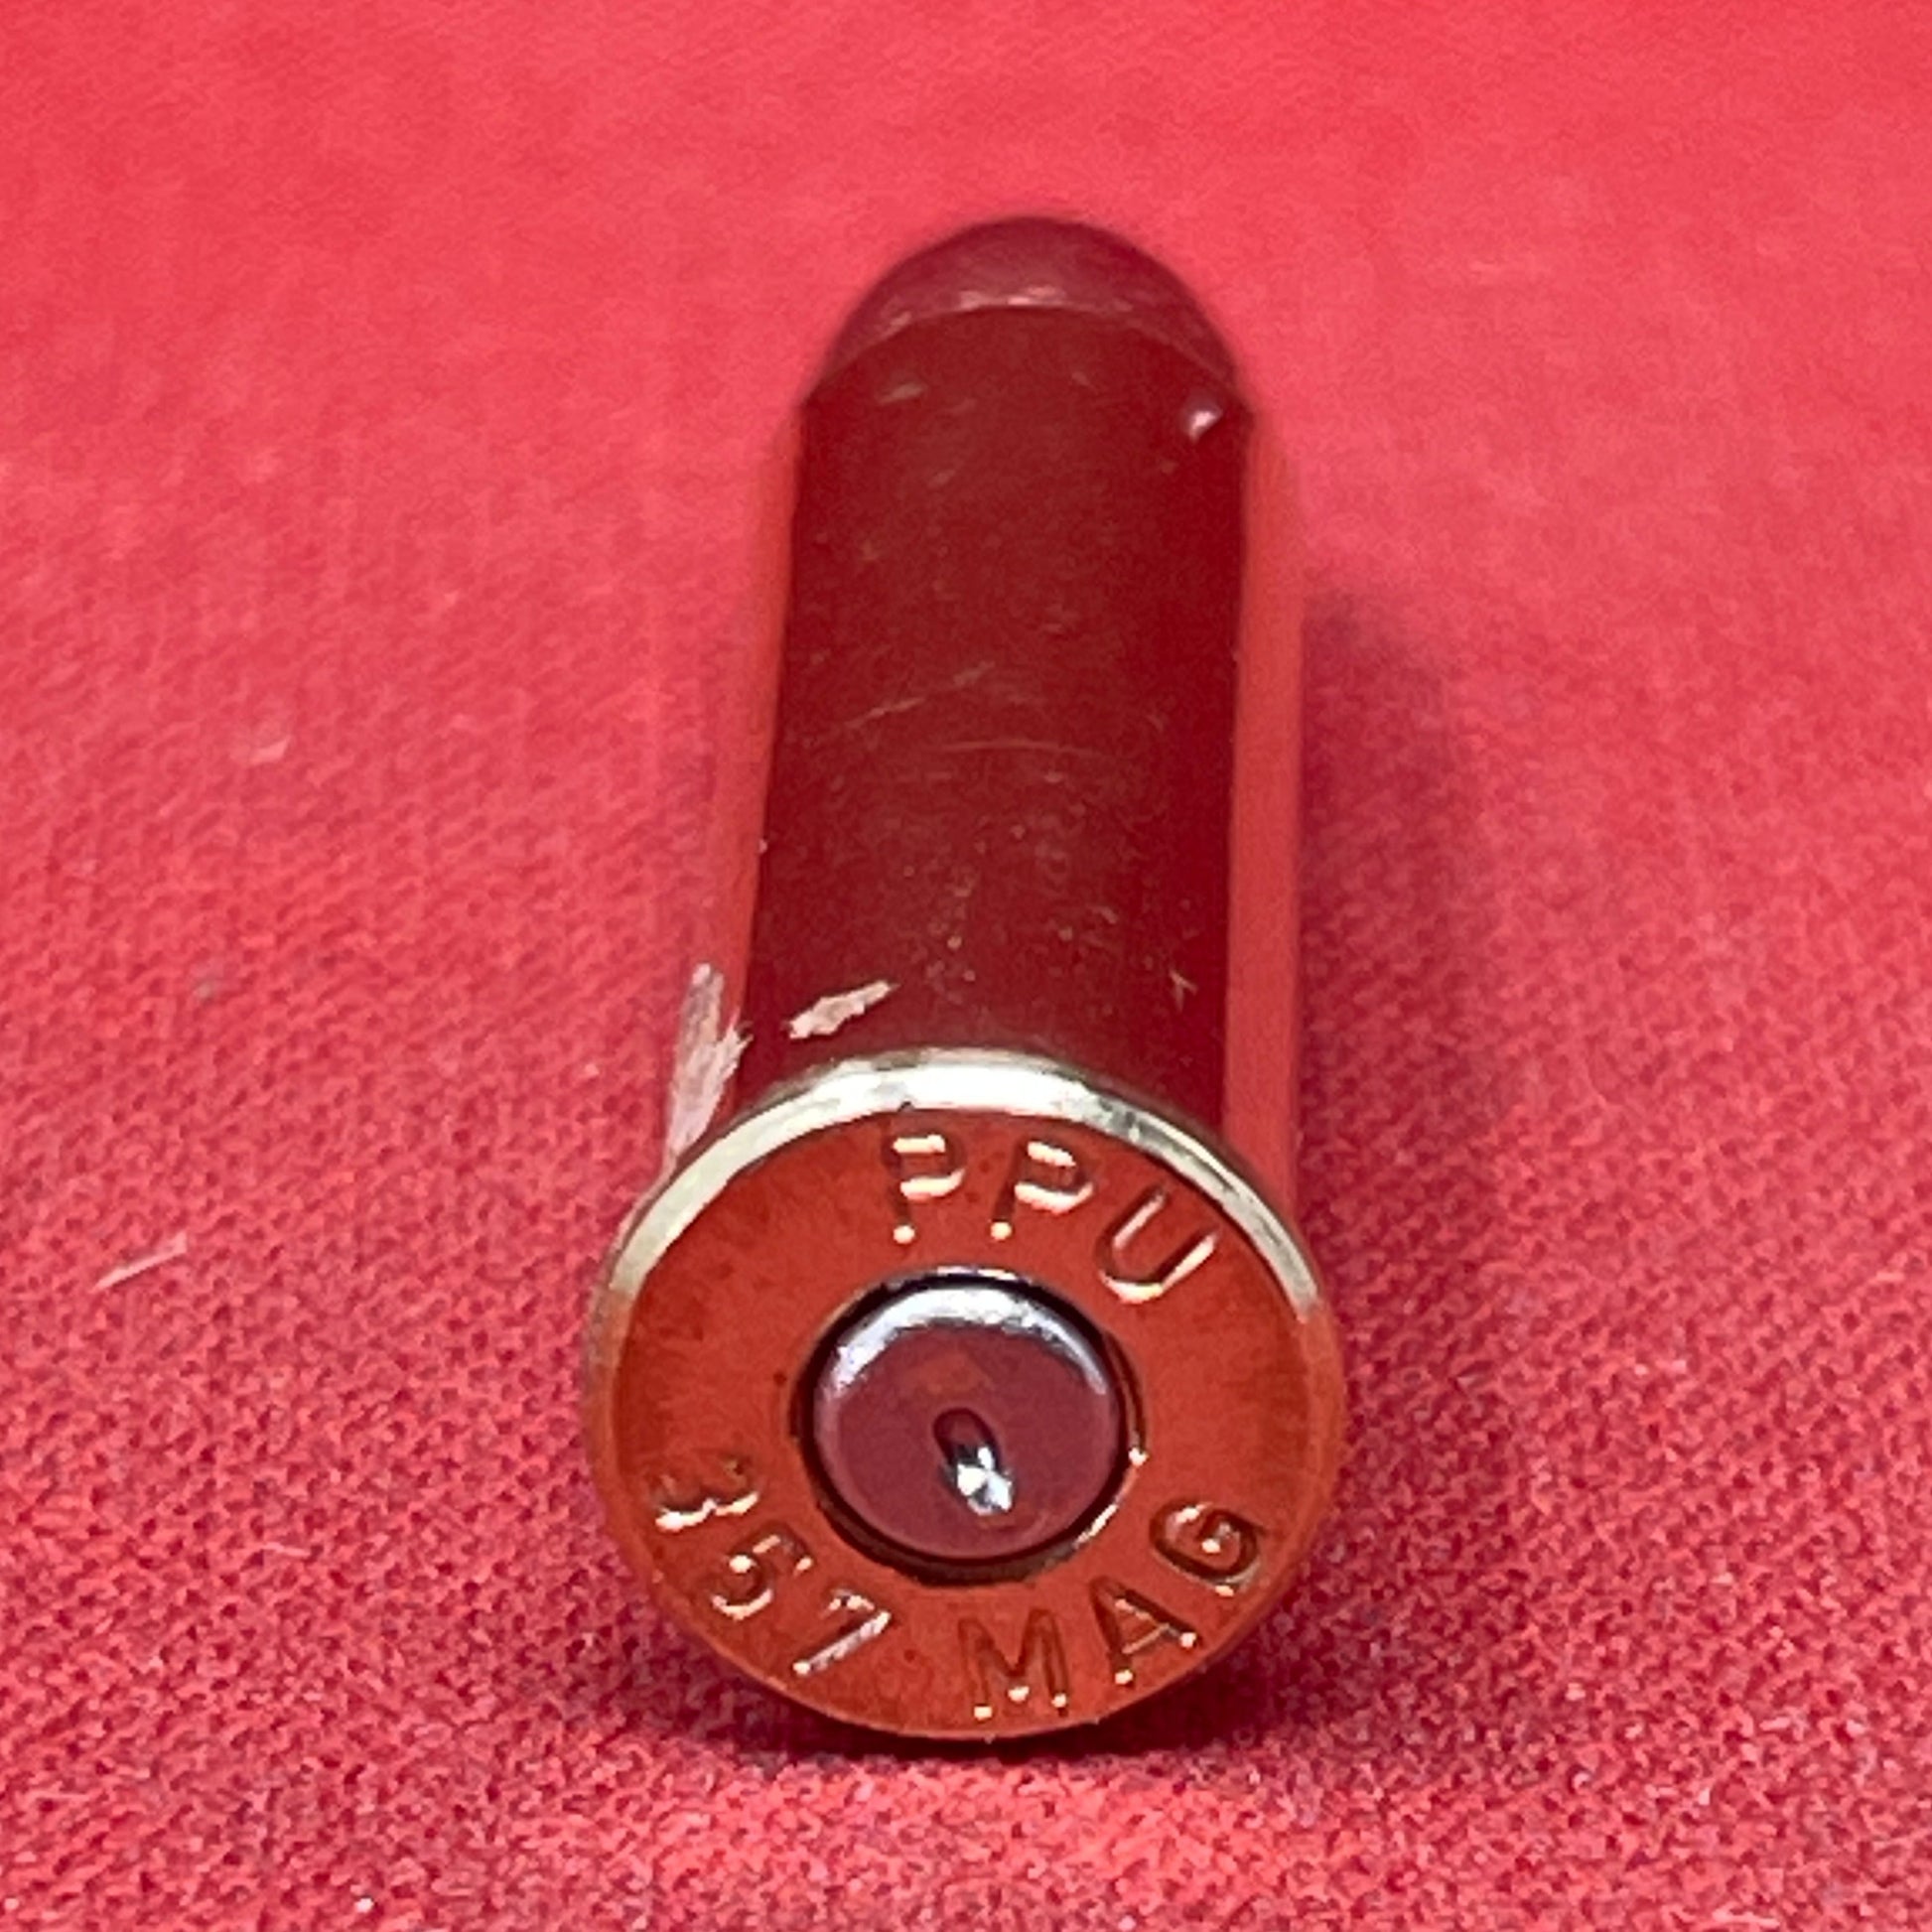 .357 Mag PPU Inert Cartridge case